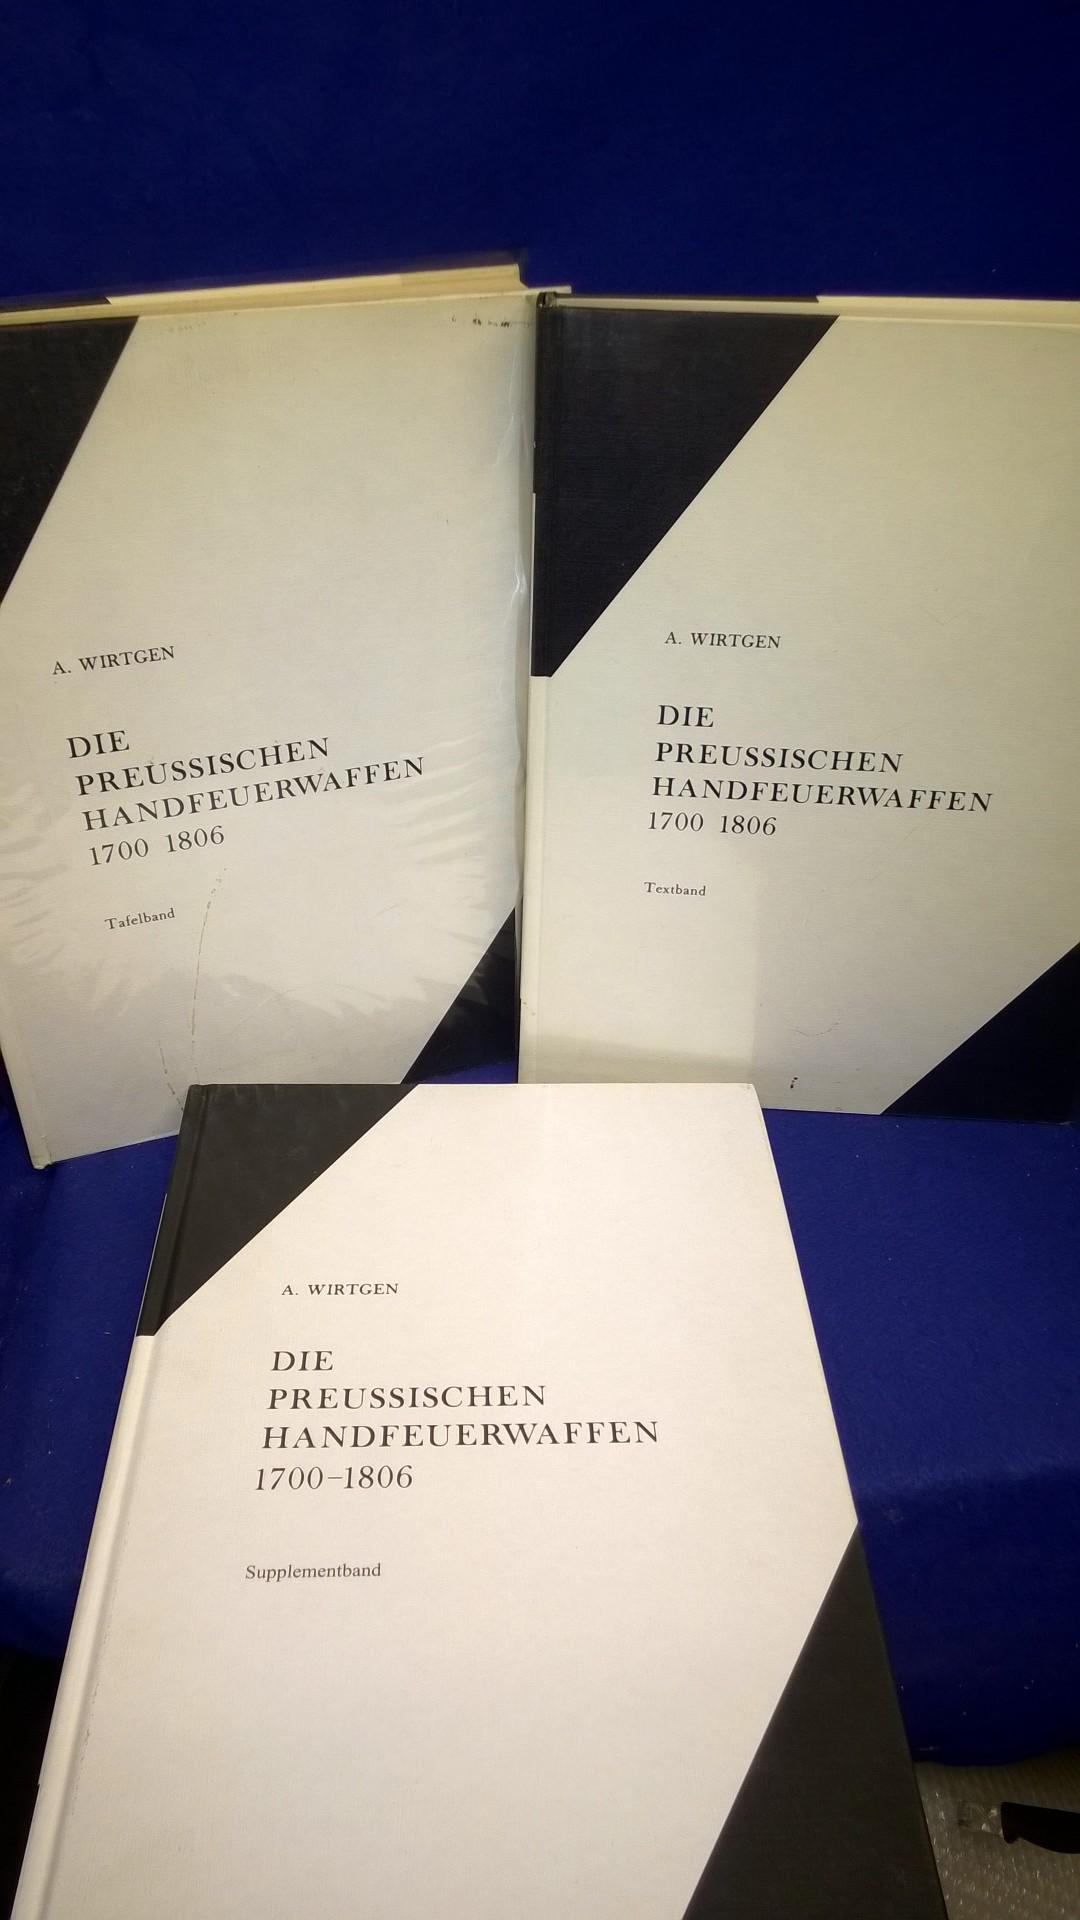 Die Preussischen Handfeuerwaffen 1700-1806. Modelle und Manufakturen - Textband & Tafelband sowie der seltene Supplementband. So komplett!